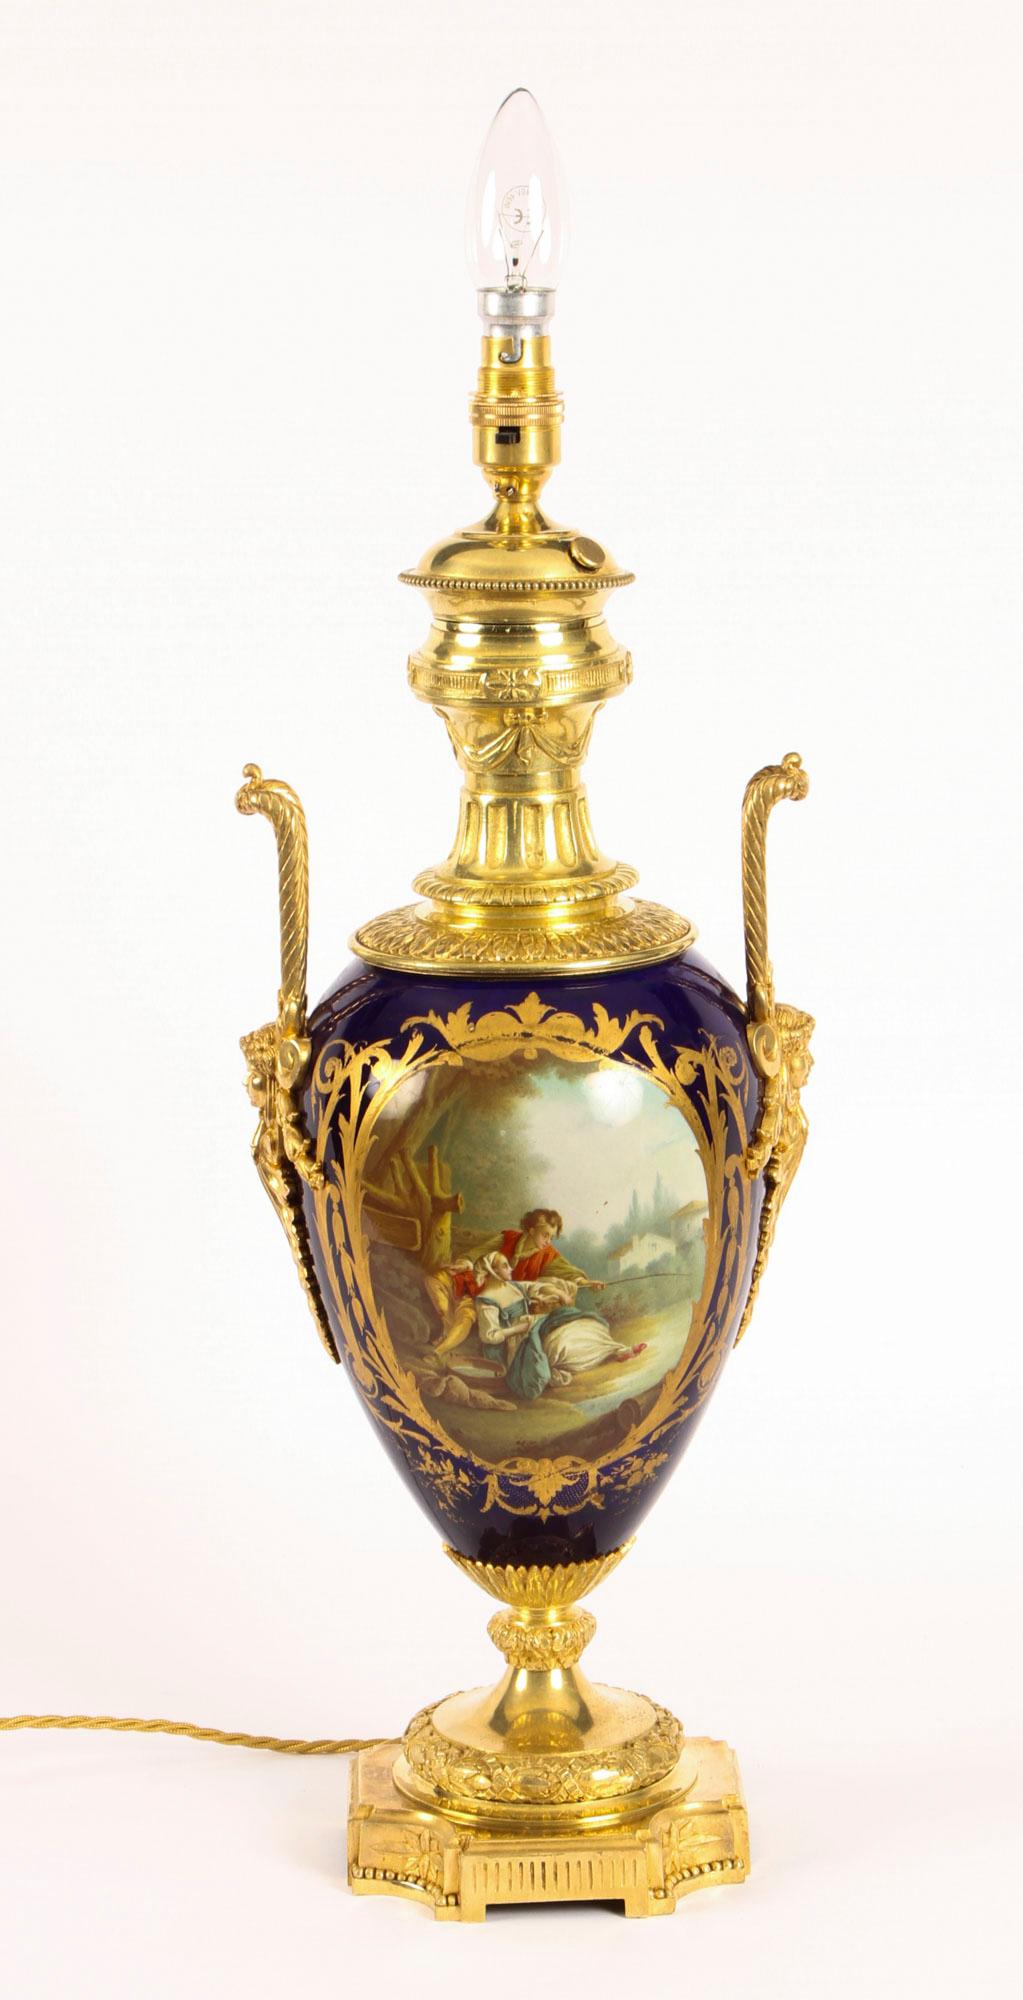 Il s'agit d'un superbe grand vase ancien en porcelaine peinte à la main et en bronze doré de Sèvres, datant d'environ 1880, transformé par la suite en lampe.

Le corps en porcelaine en forme de vase est peint de panneaux encadrés de dorures